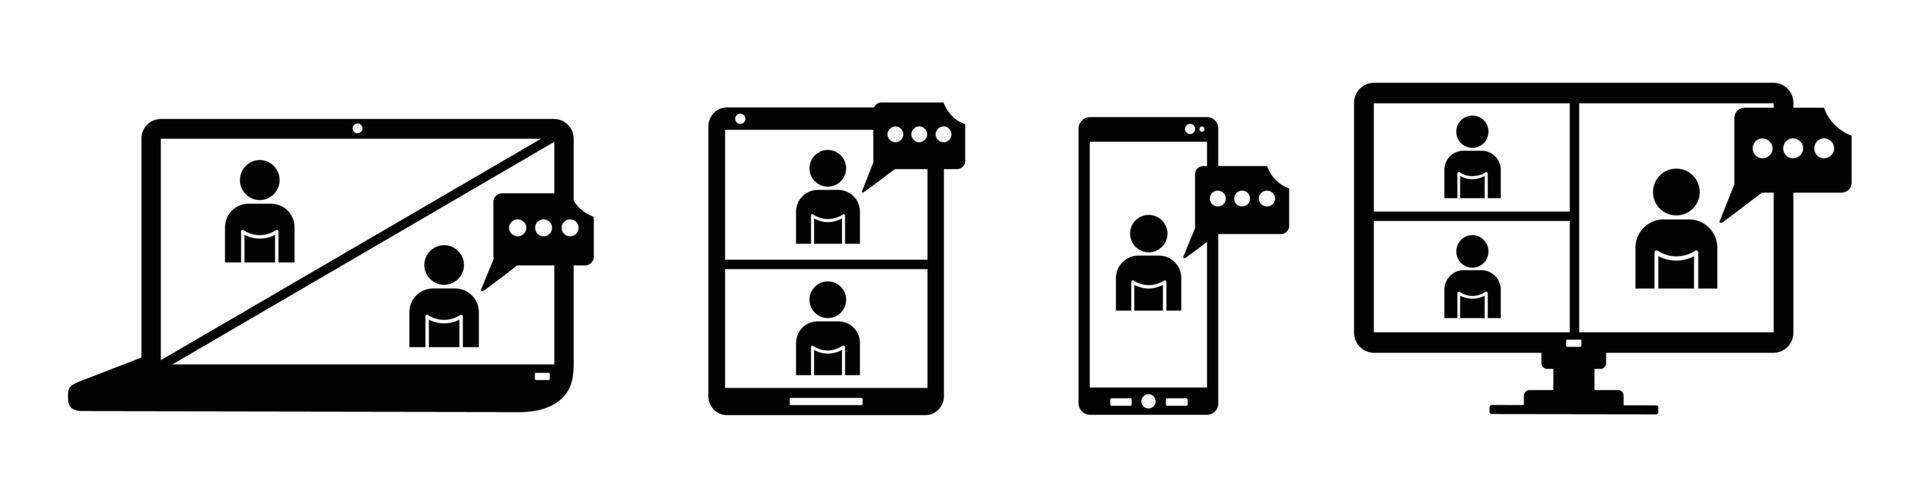 illustration vectorielle définie icône de formation en ligne sur écran d'ordinateur portable, personnes sur écran d'ordinateur, smartphone, tablette, espace de travail de réunion en ligne, conversation sur Internet vecteur